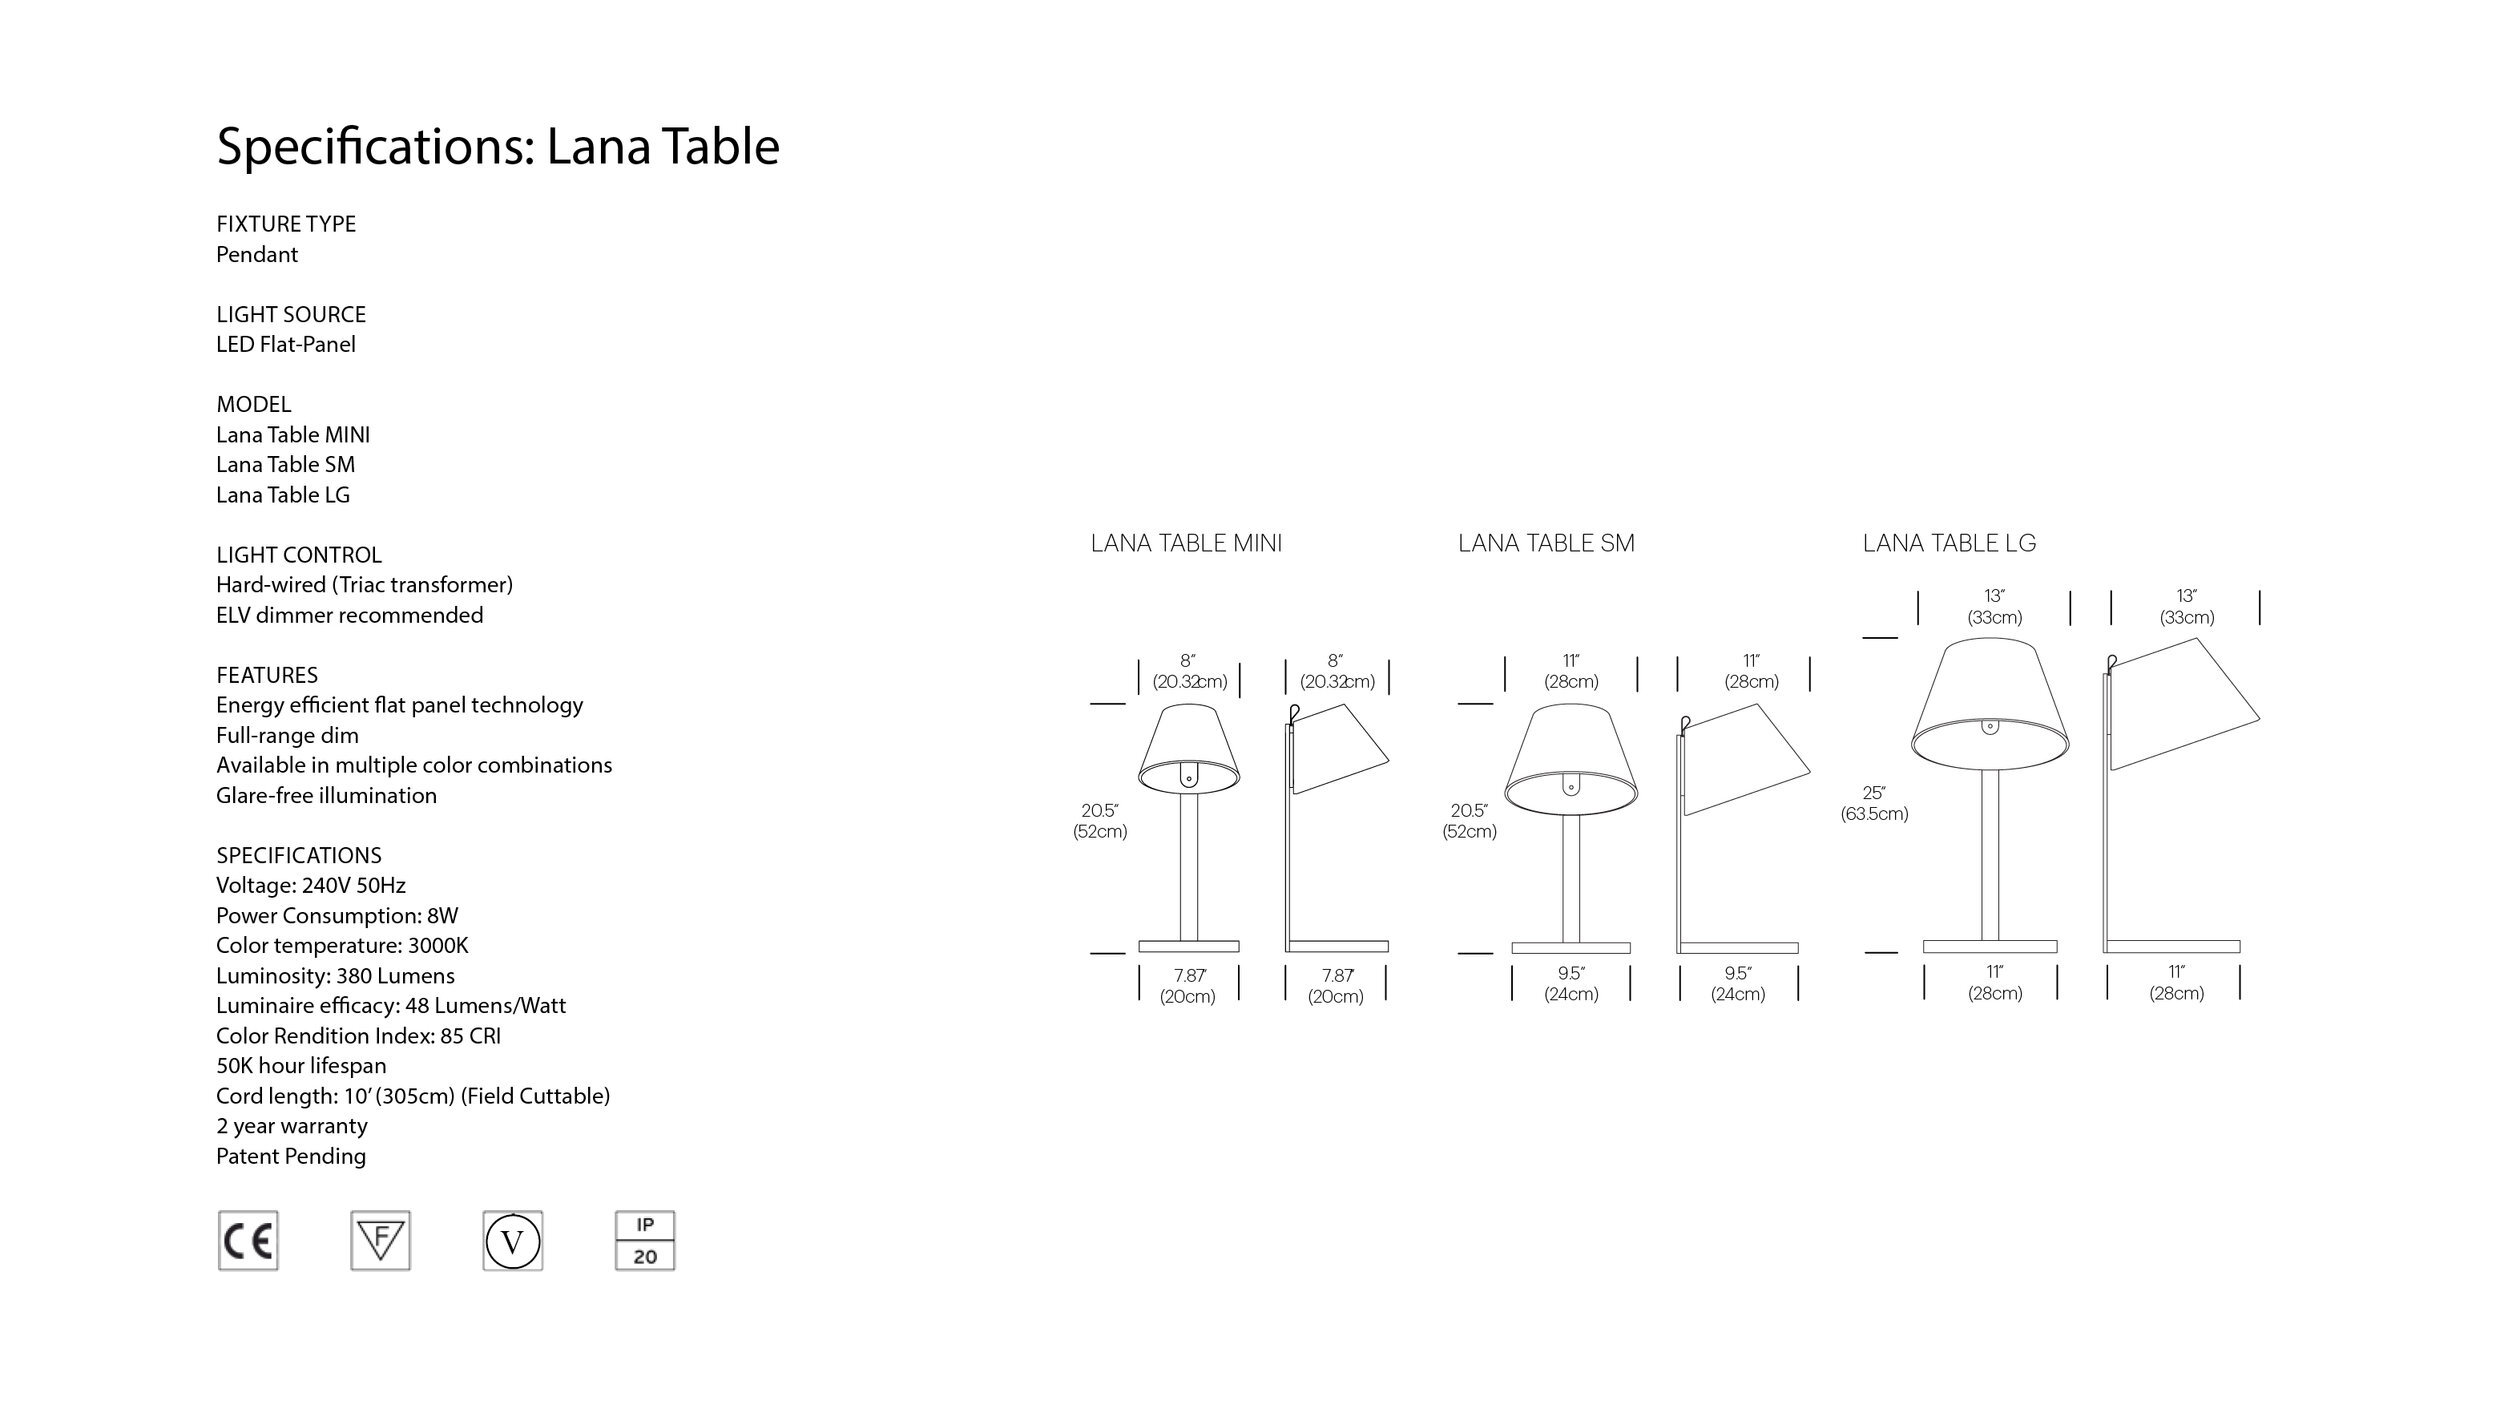 EU+Lana+Table+dims (image for EU spec sheets).jpg